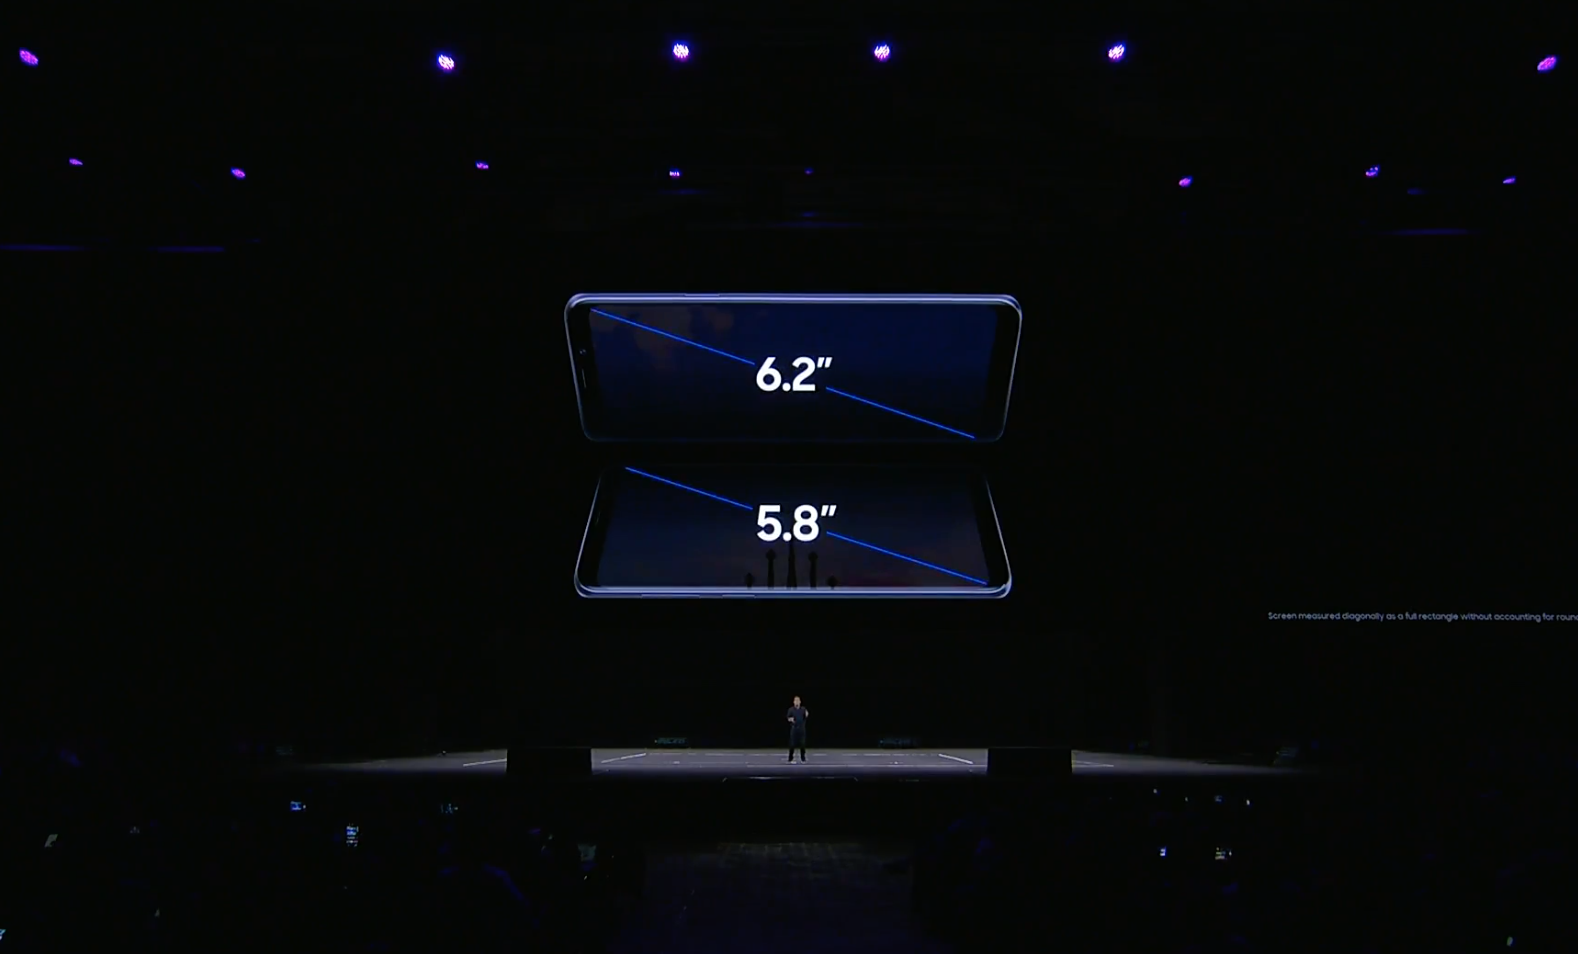 Bộ đôi Galaxy S9 và S9+ chính thức ra mắt với hàng loạt tính năng siêu khủng